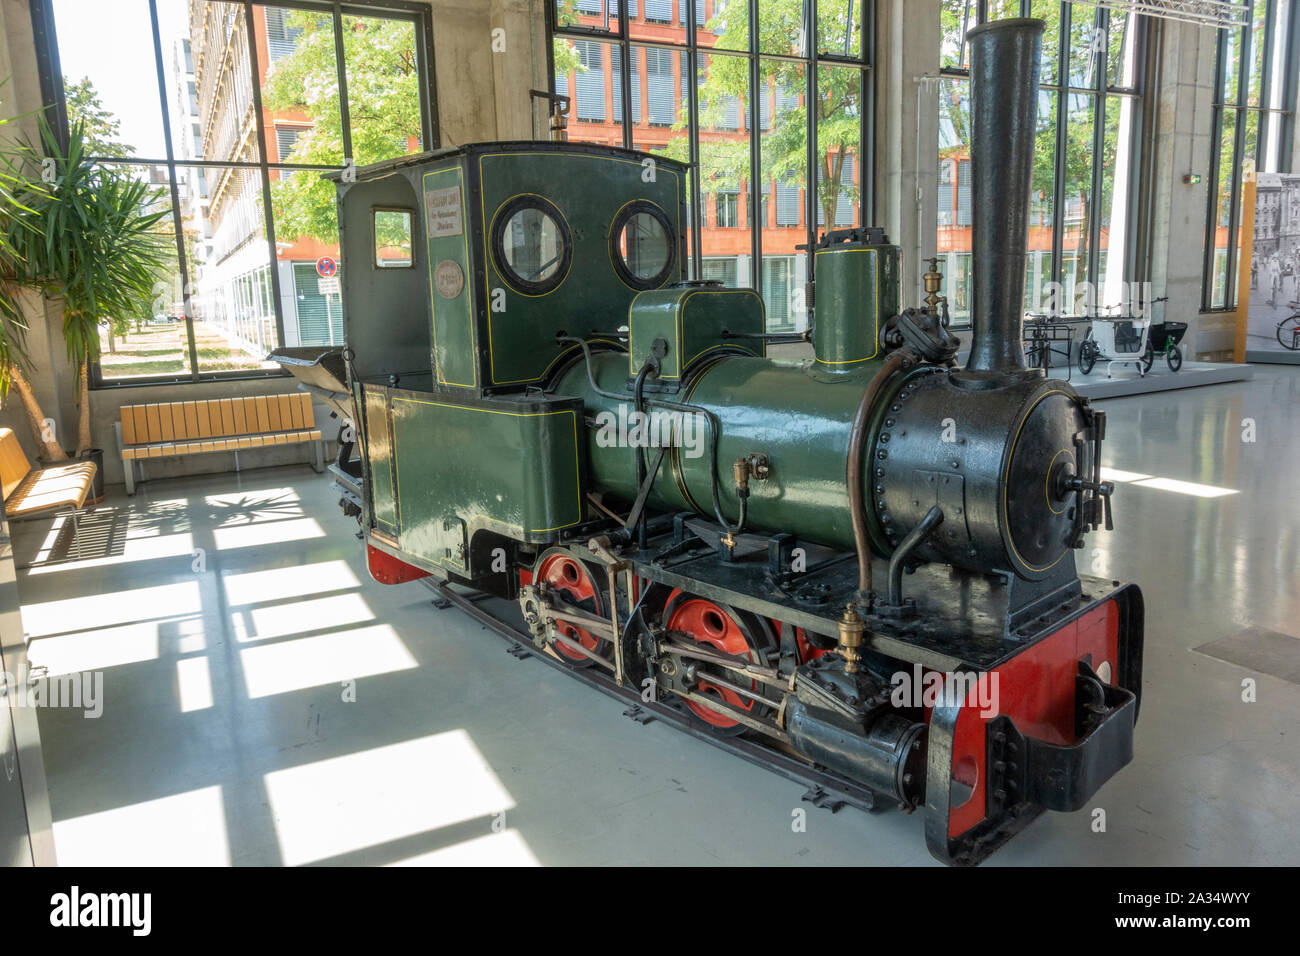 Une locomotive à vapeur fabriqué par Krauss & Compagnie (1903) dans le Deutsches Museum (Musée allemand des transports Verkehrszentrum), Munich, Allemagne. Banque D'Images